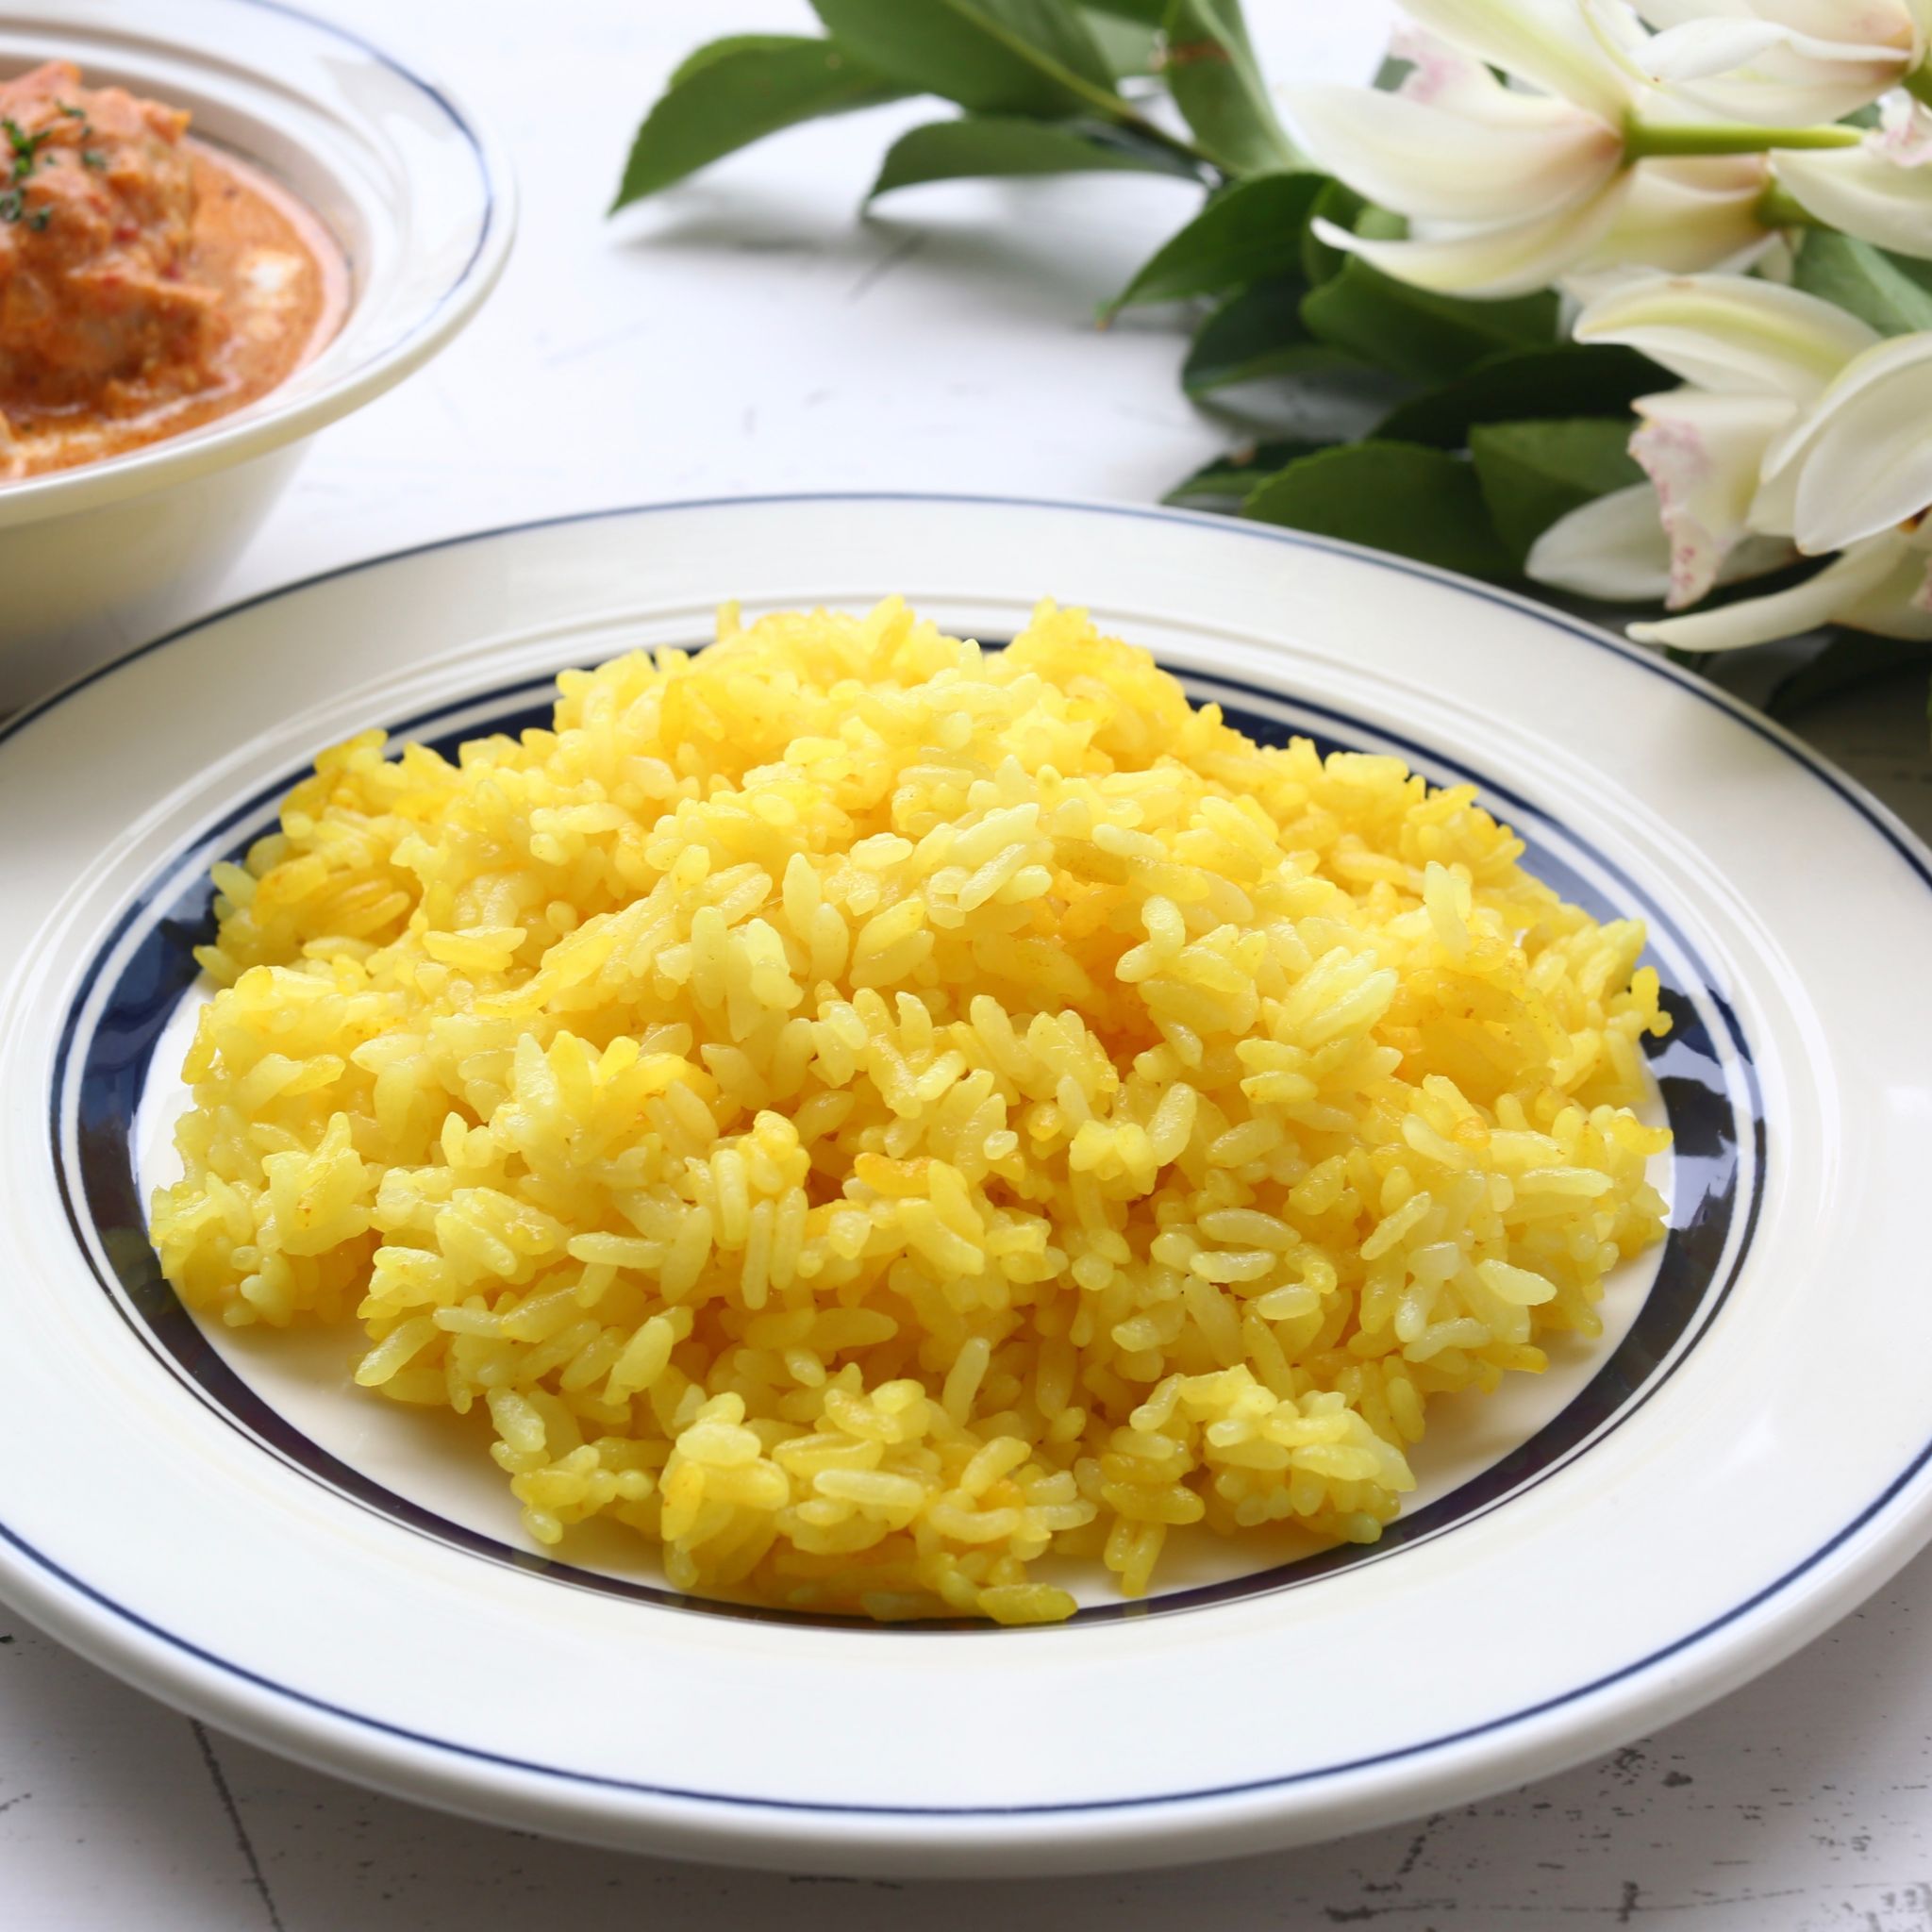 ターメリックライスの作り方 人気インド料理店の炊飯器レシピ やまでら くみこ のレシピ